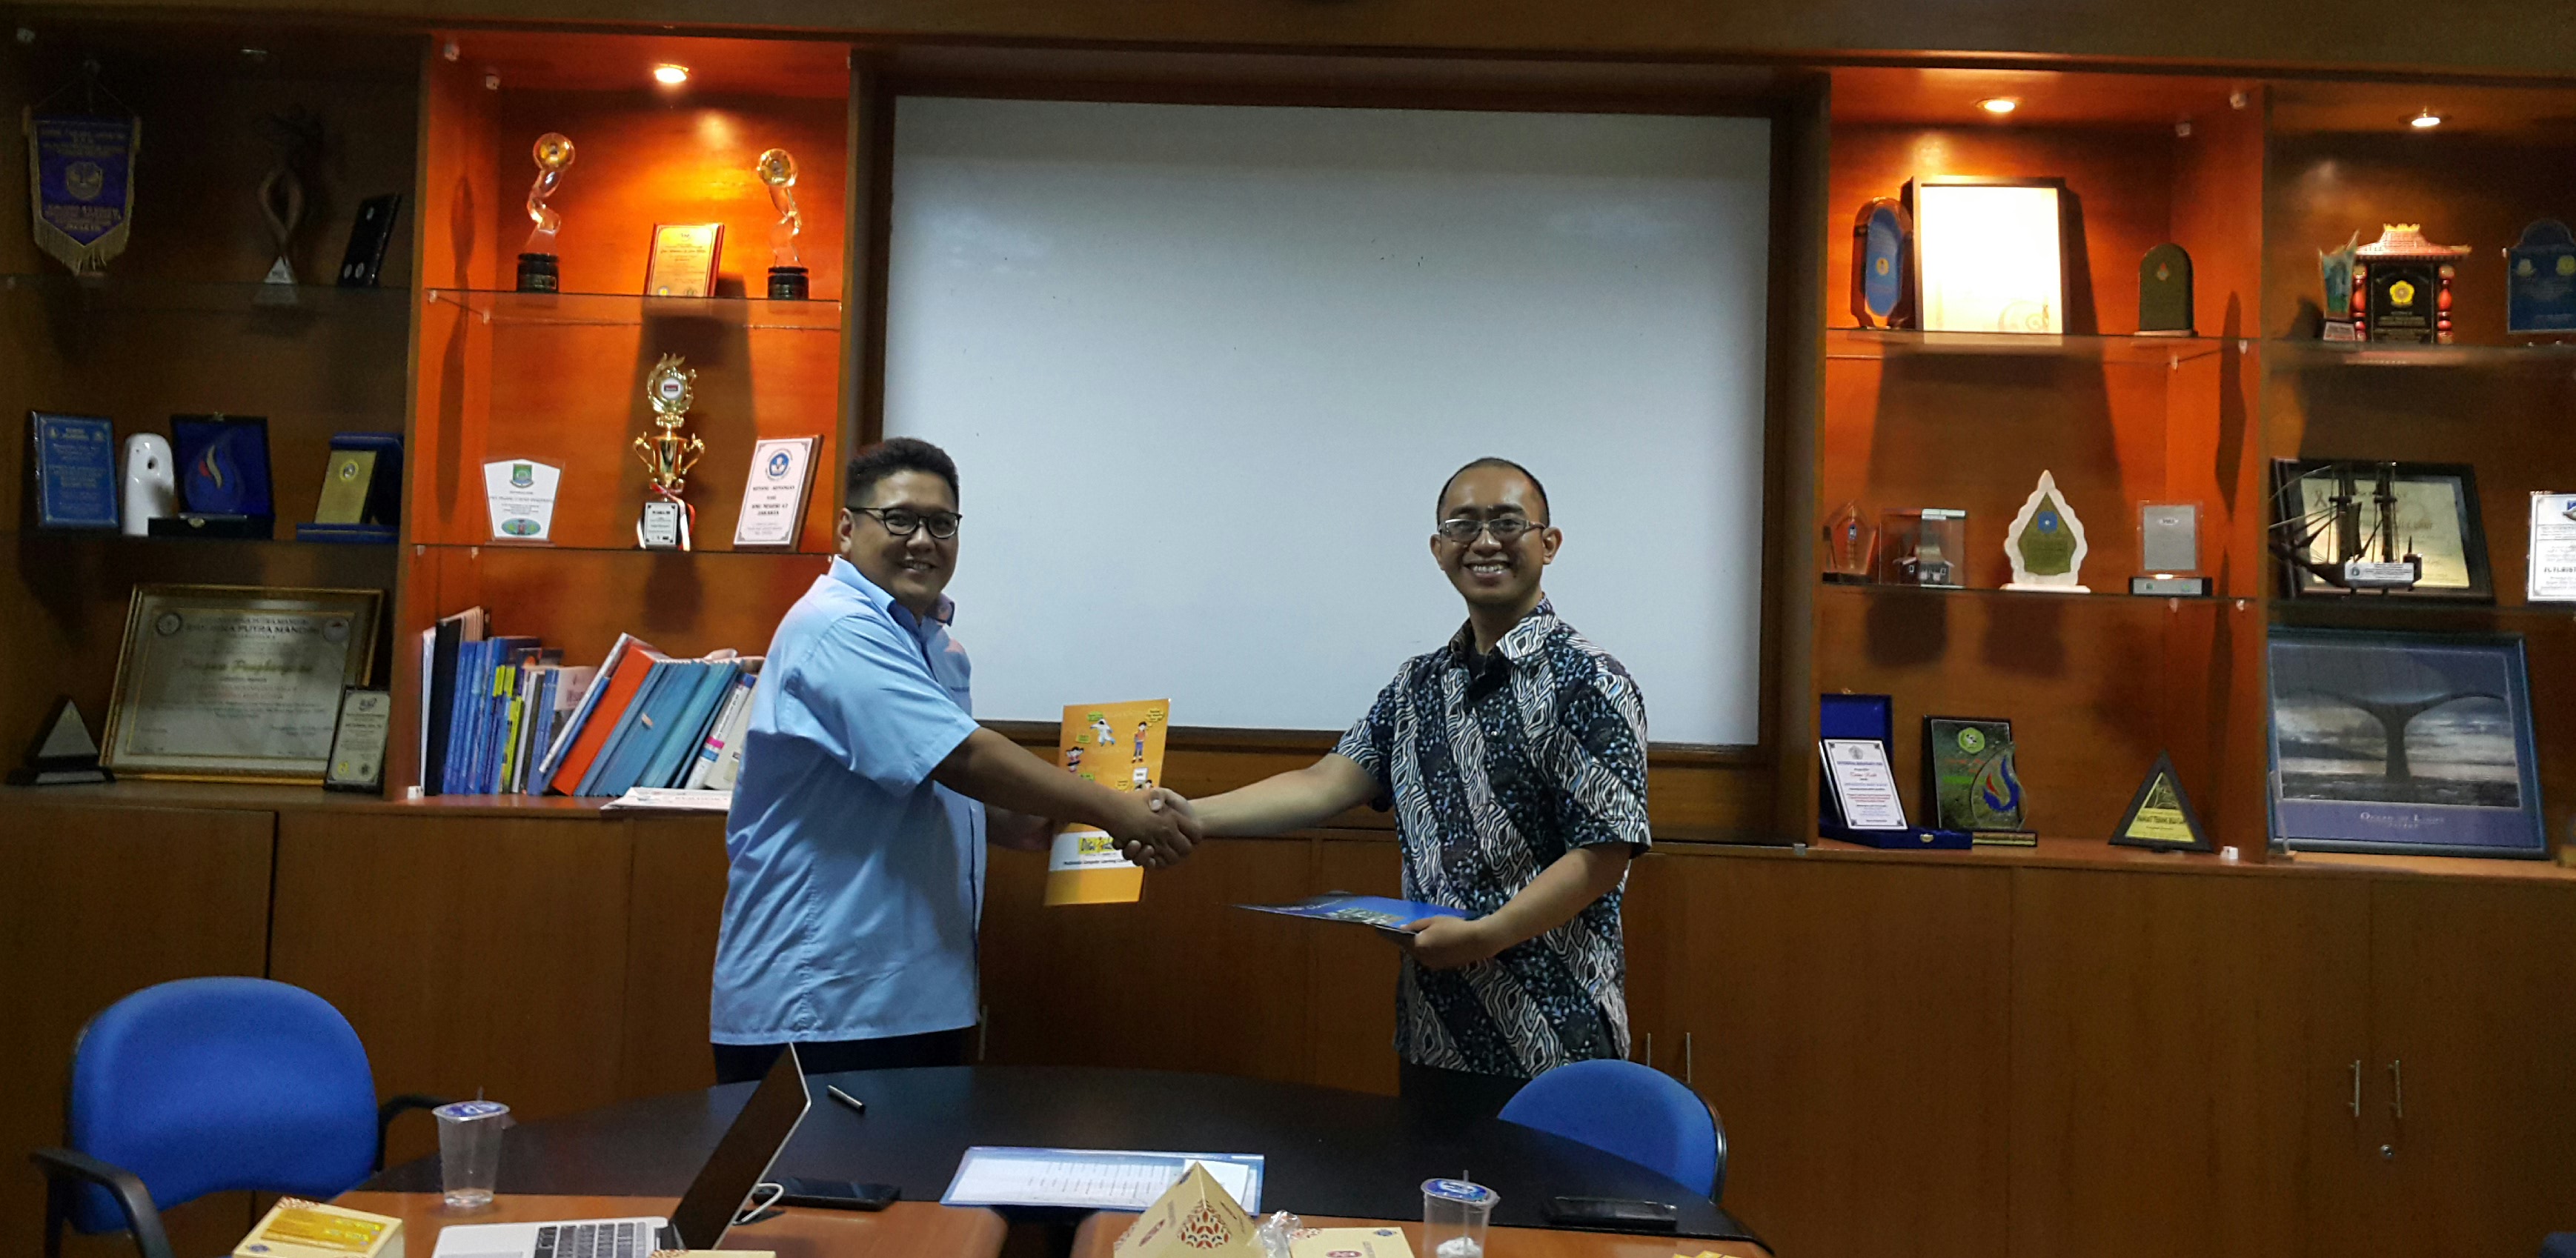 Penandatanganan Memorandum of Understanding (MoU) Fakultas Teknologi Informasi Universitas Budi Luhur dengan PT. Digikidz Indonesia